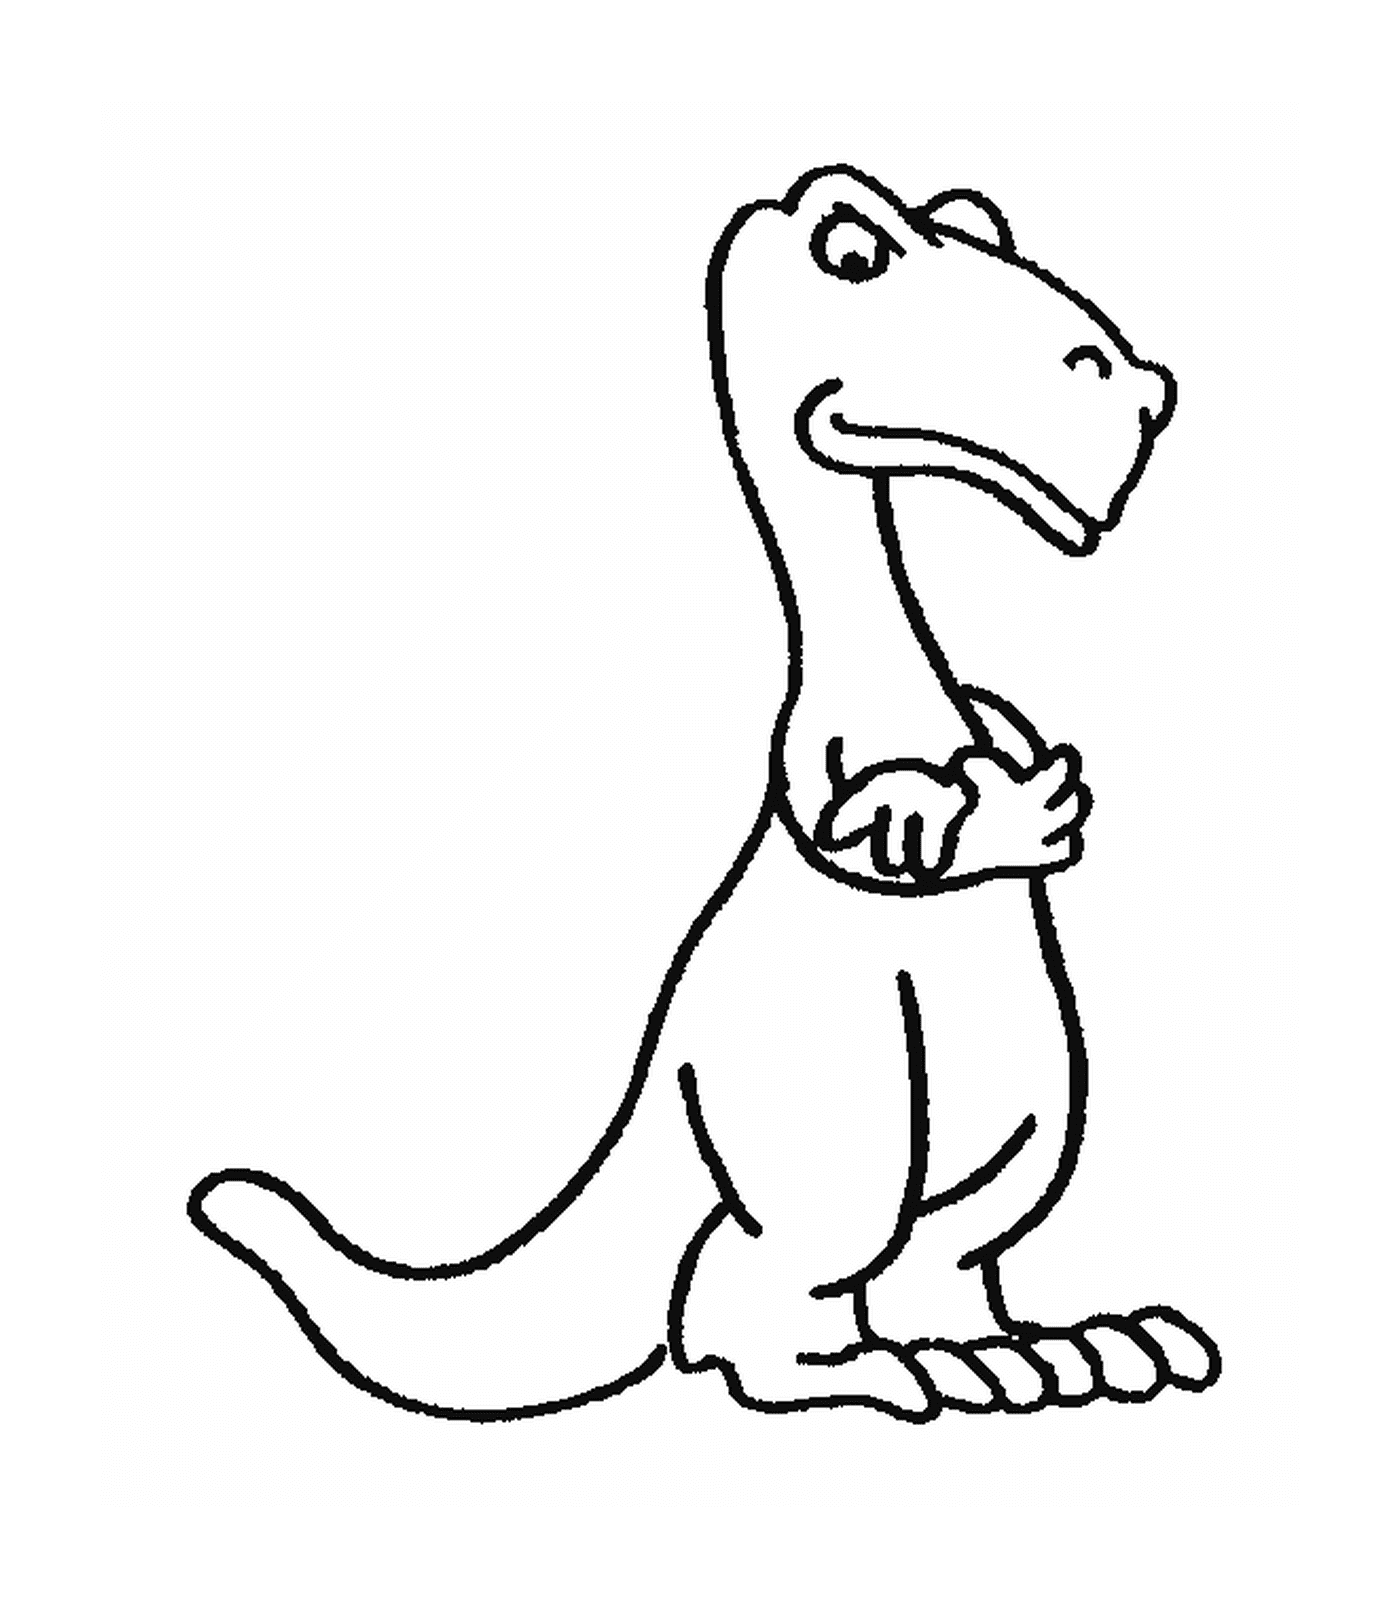  Динозавр с внушительным взглядом 